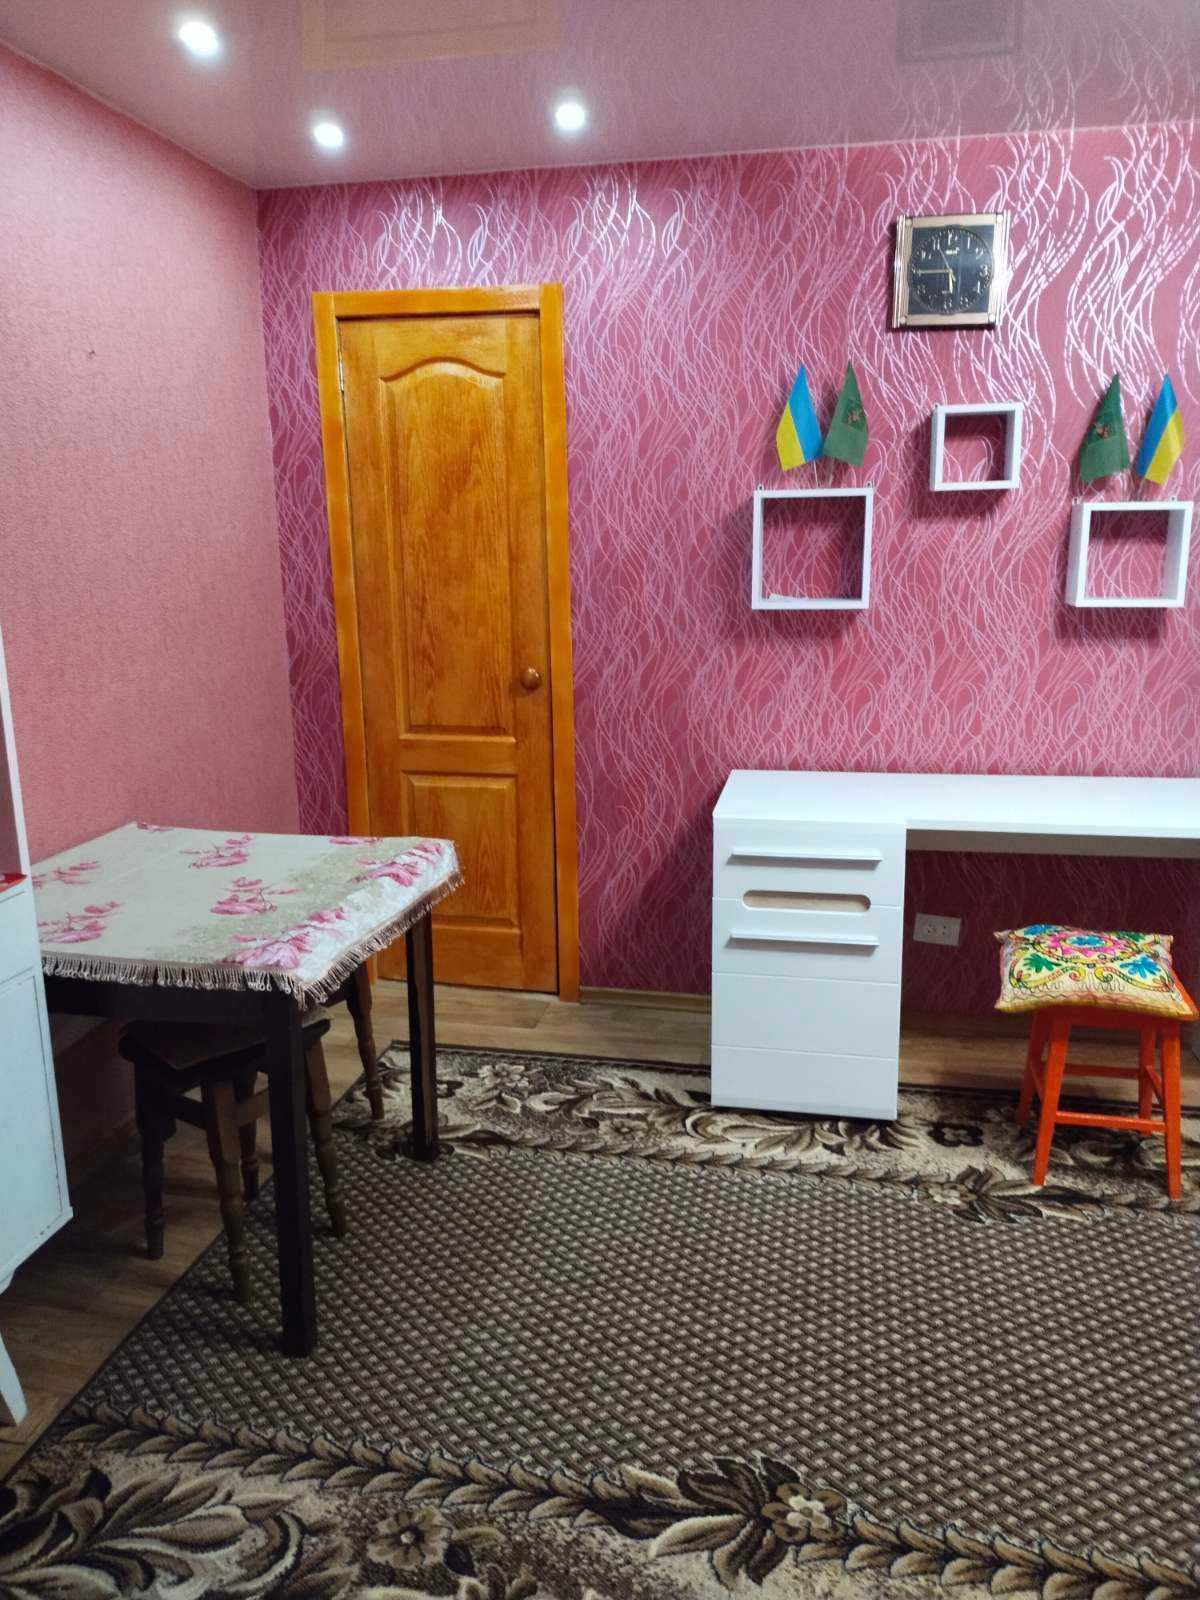 Продается 2-х комнатная квартира в пгт.Савинцы  Харьковская область